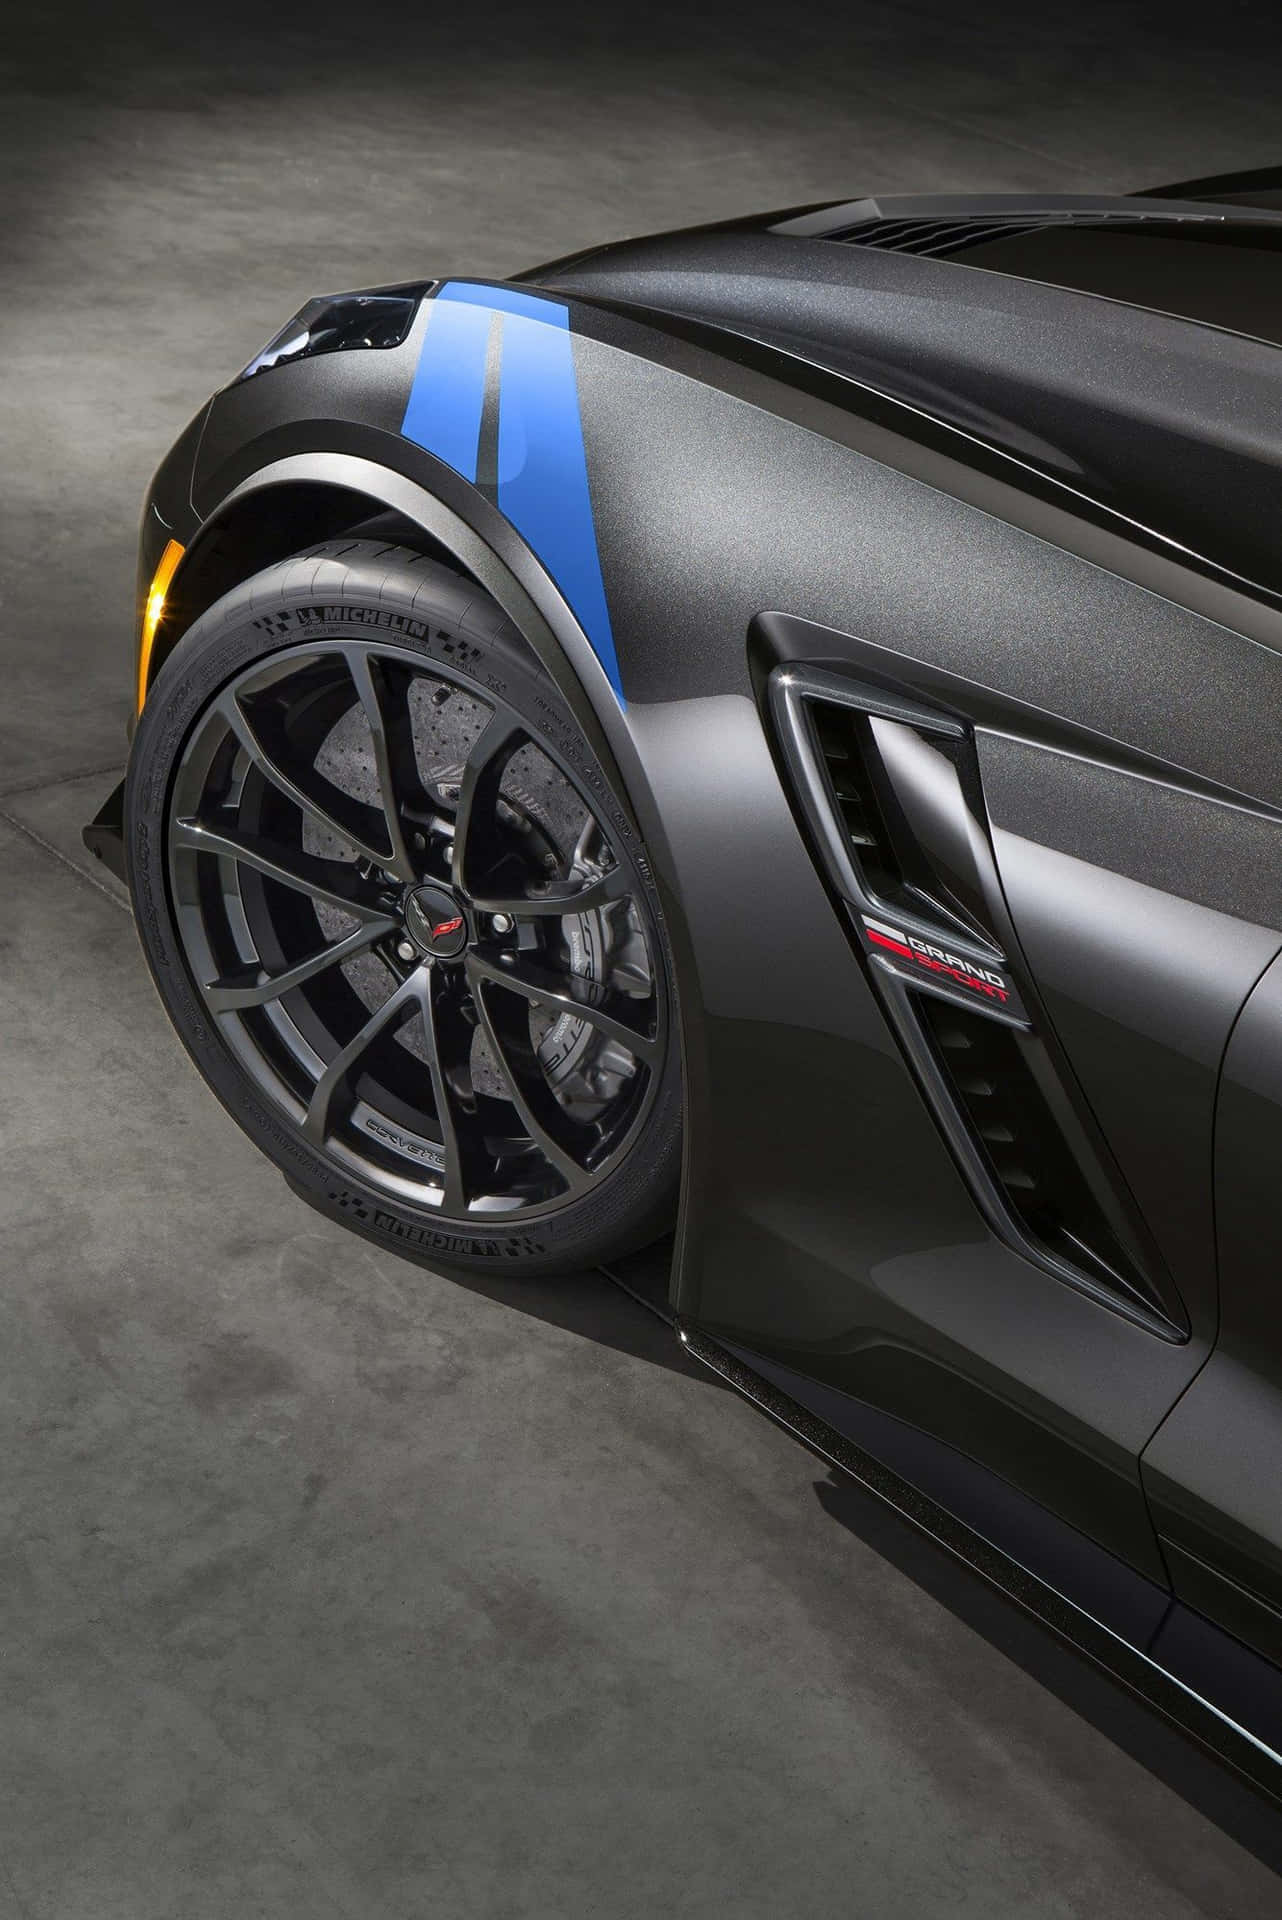 Stunning Chevrolet Corvette Grand Sport in motion on the track Wallpaper